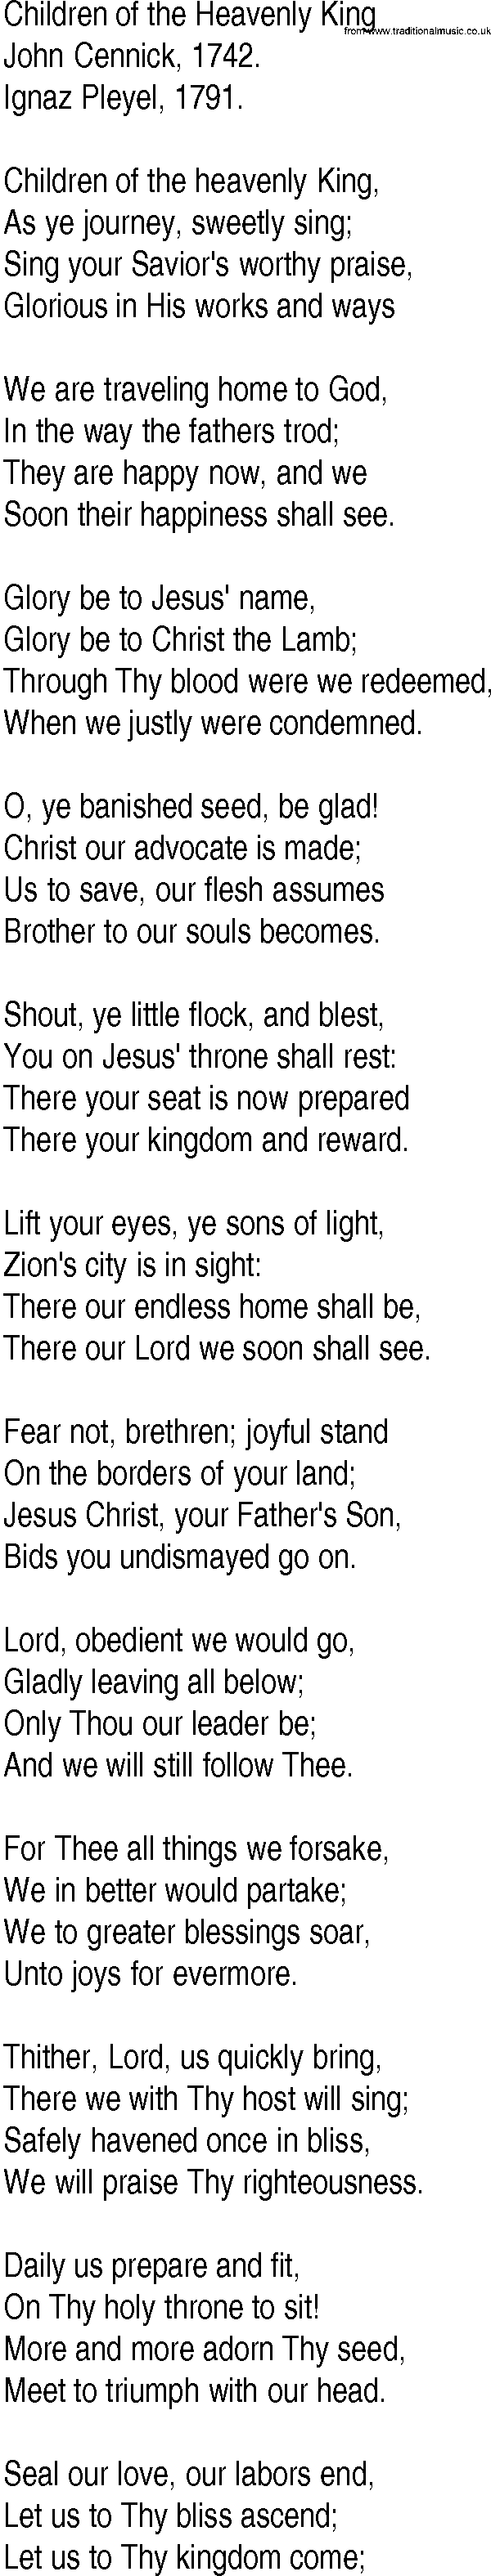 Hymn and Gospel Song: Children of the Heavenly King by John Cennick lyrics